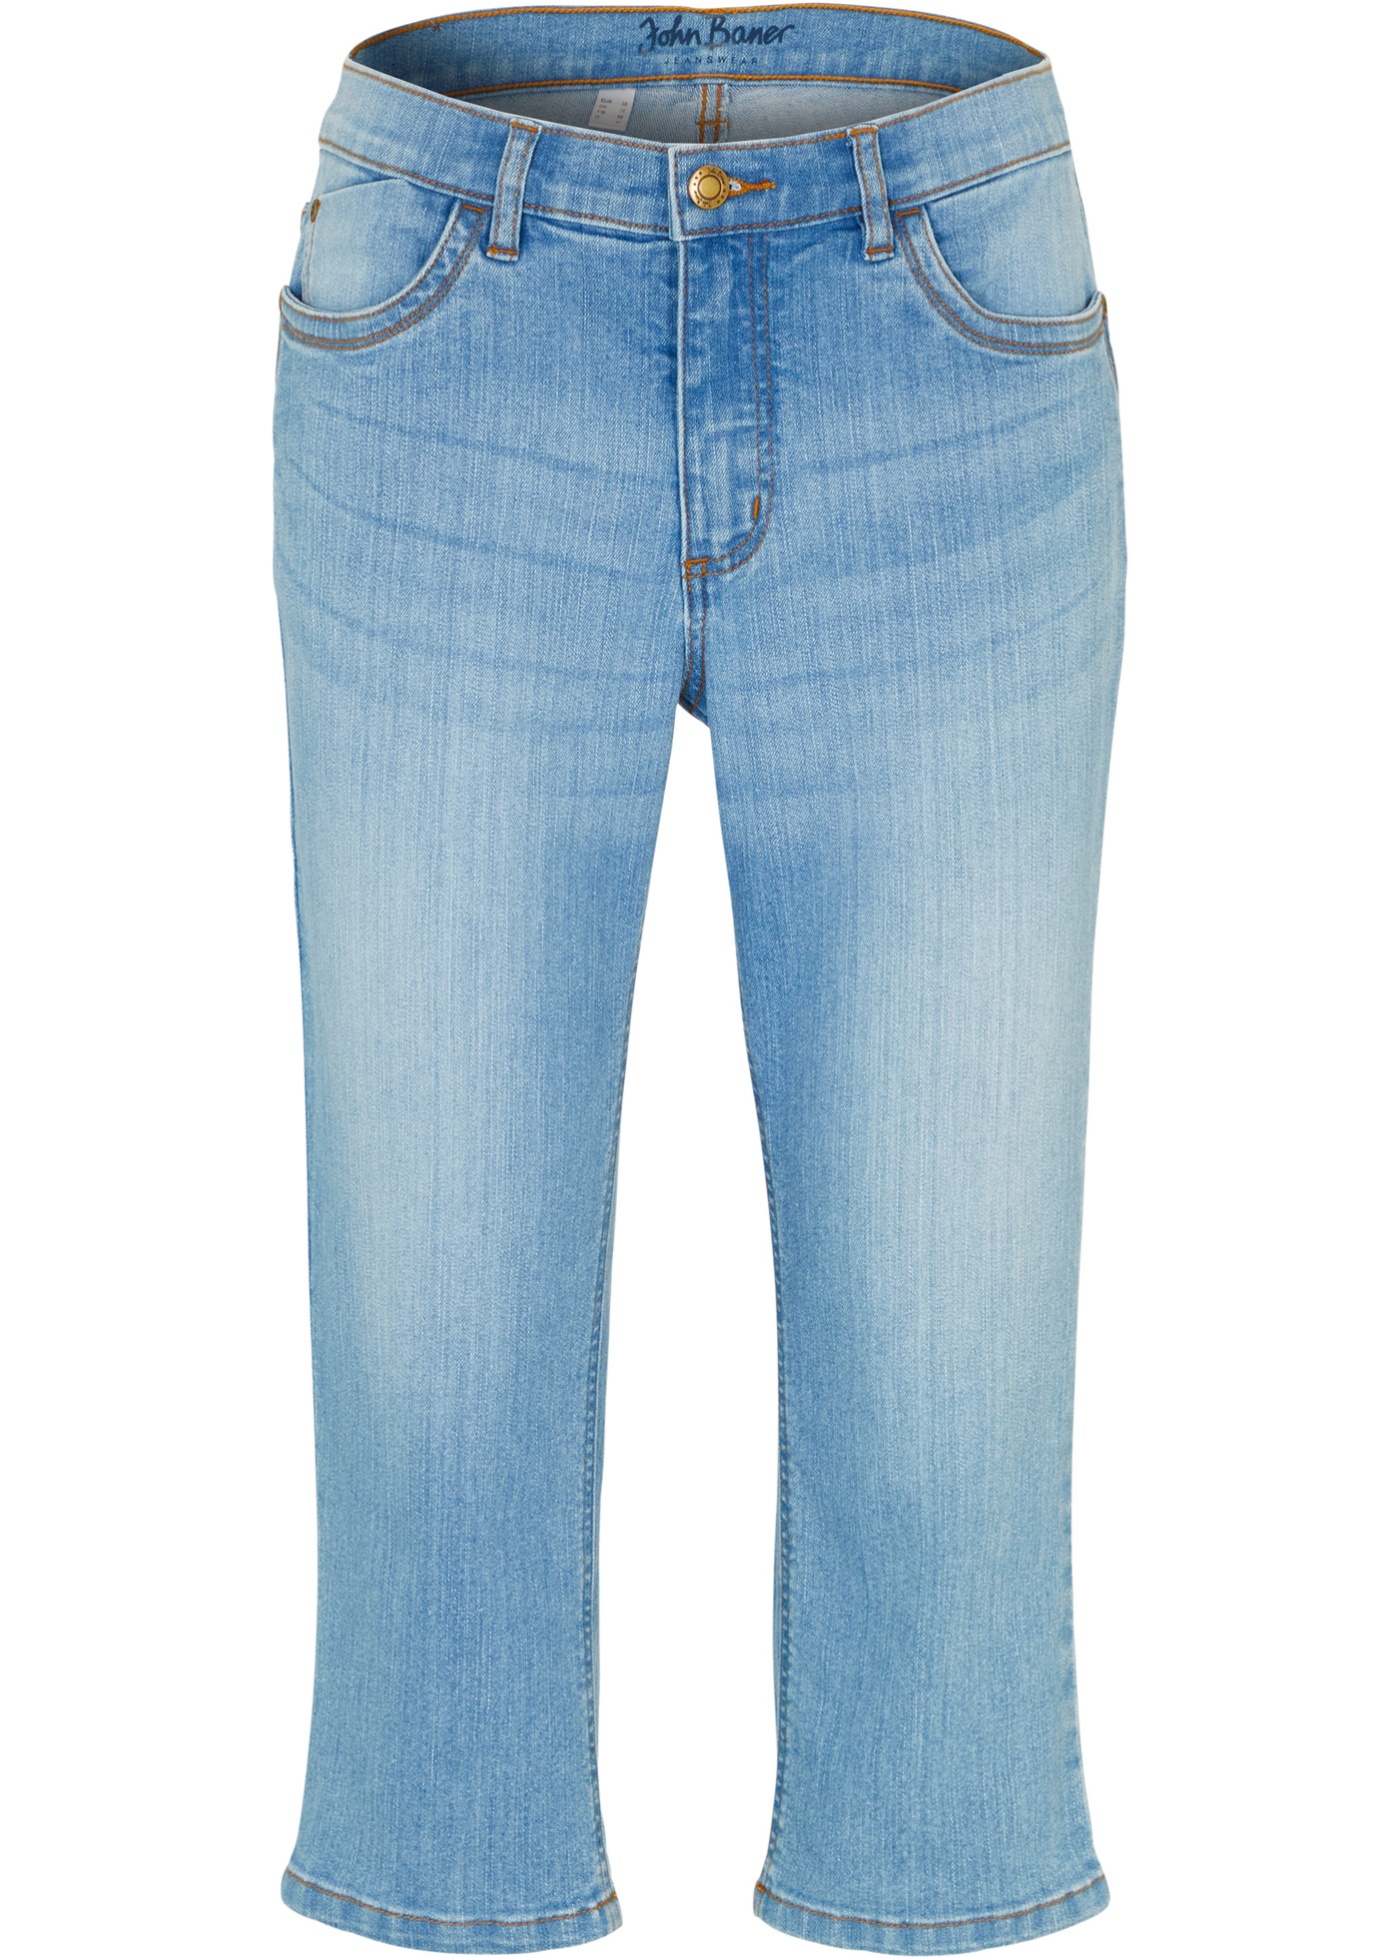 Stretch capri jeans